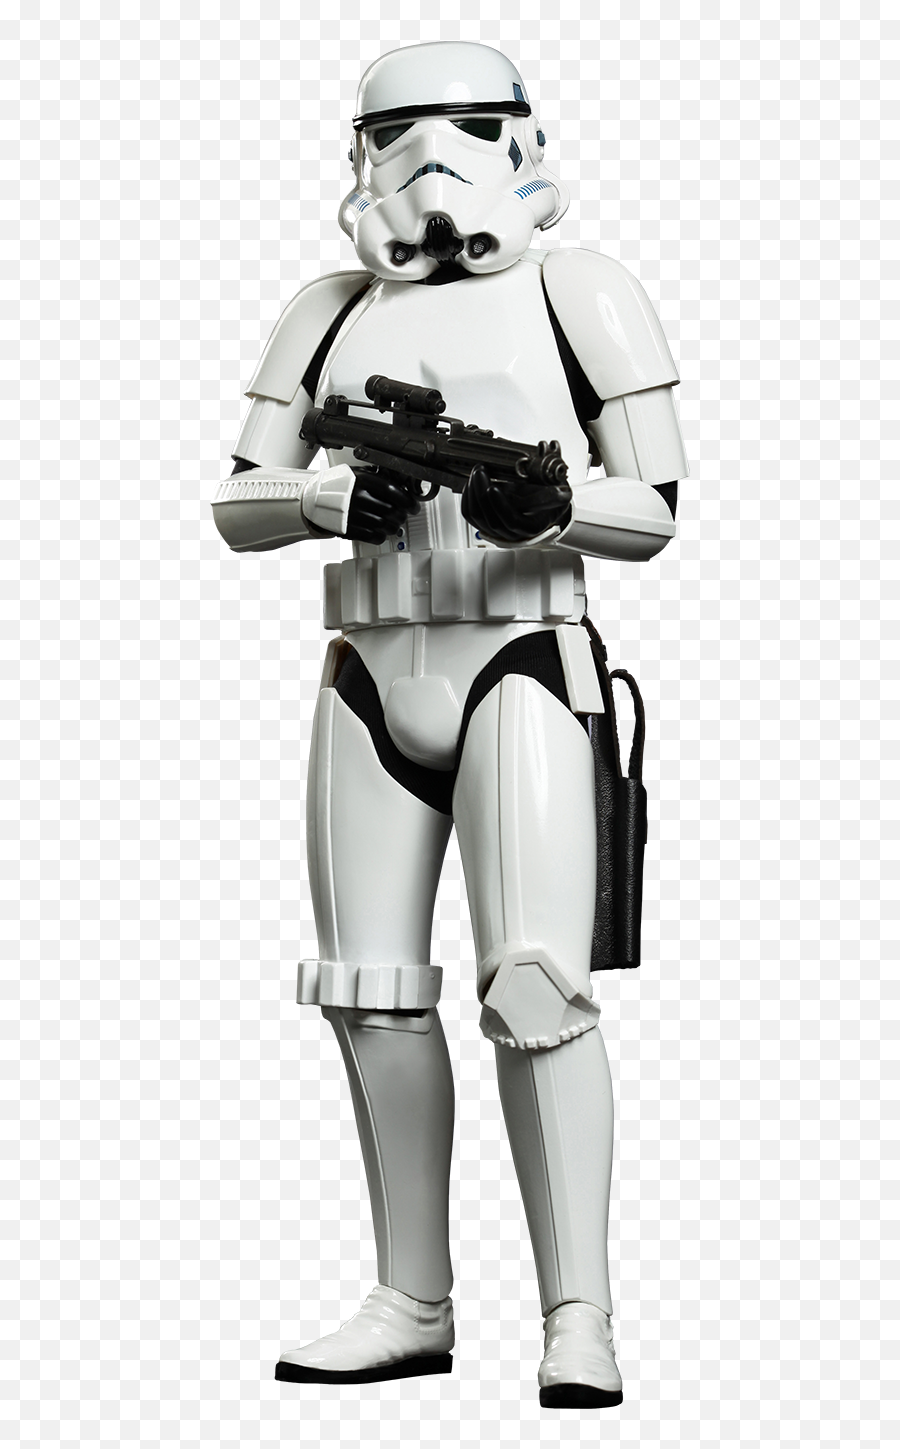 Stormtrooper - Storm Trooper Png,Stormtrooper Png